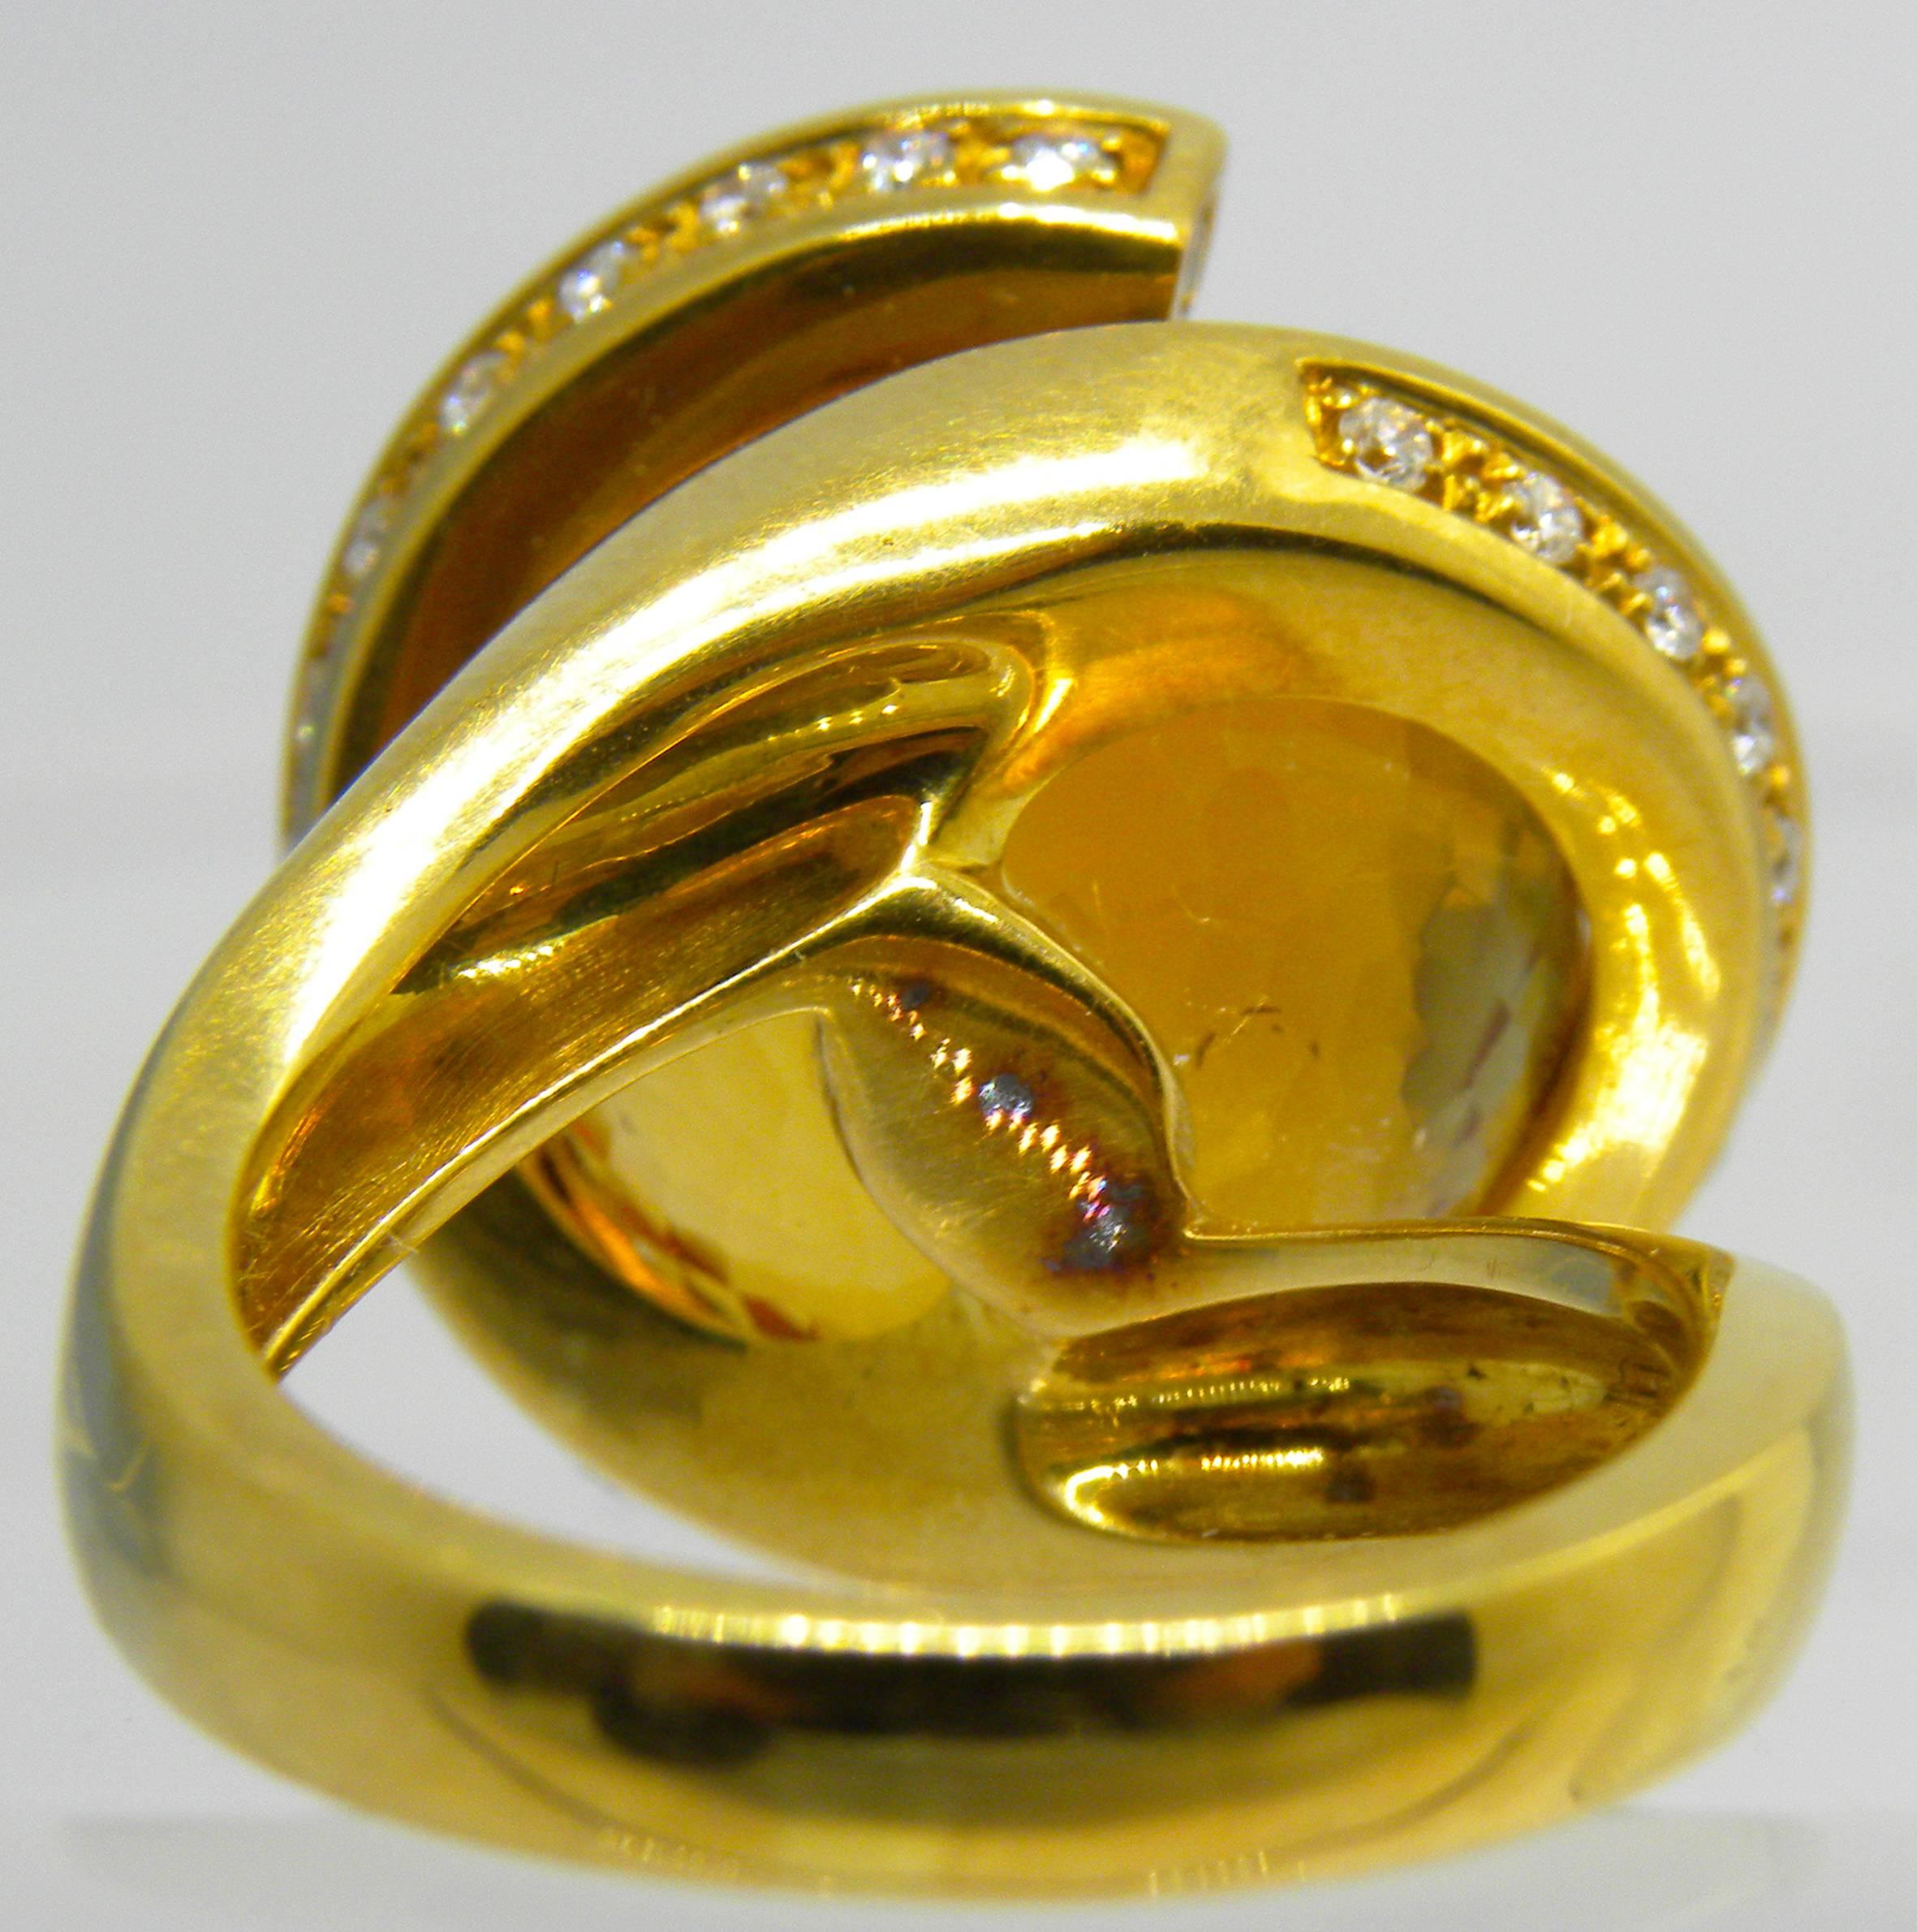 Ikonische, einzigartige und doch zeitlose 25,70 Karat natürliche Madeira Hand eingelegt, Hand facettiert Citrin Ball, Durchmesser 0,59 Zoll (15mm), in einem 0,65Kt White Diamond 18 Karat Gelbgold handgefertigt und skulpturale Helix Einstellung.
In